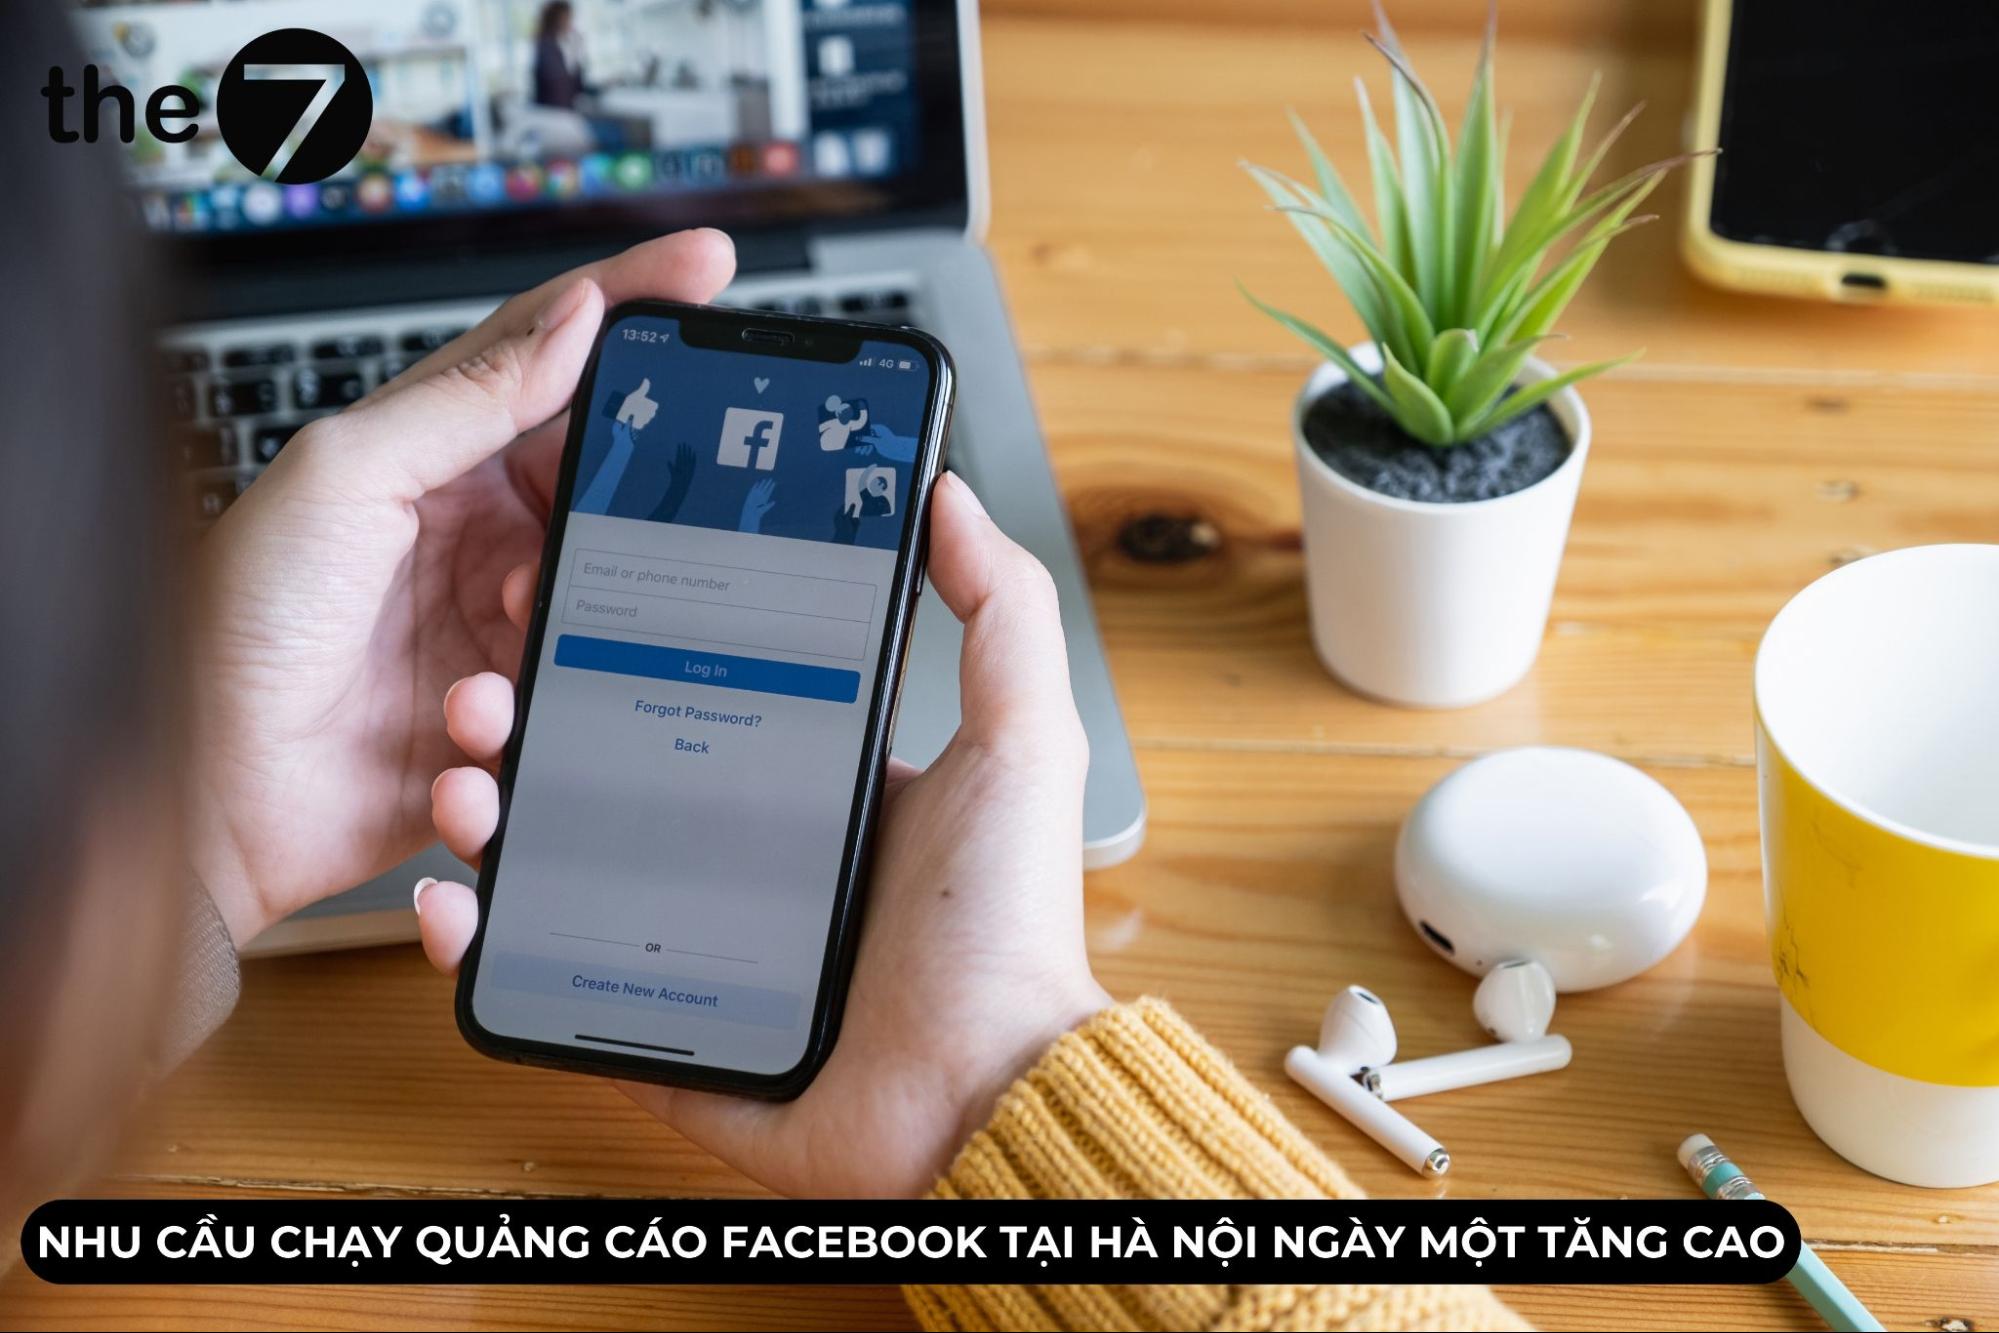 Nhu cầu chạy quảng cáo Facebook tại Hà Nội đang ngày càng tăng